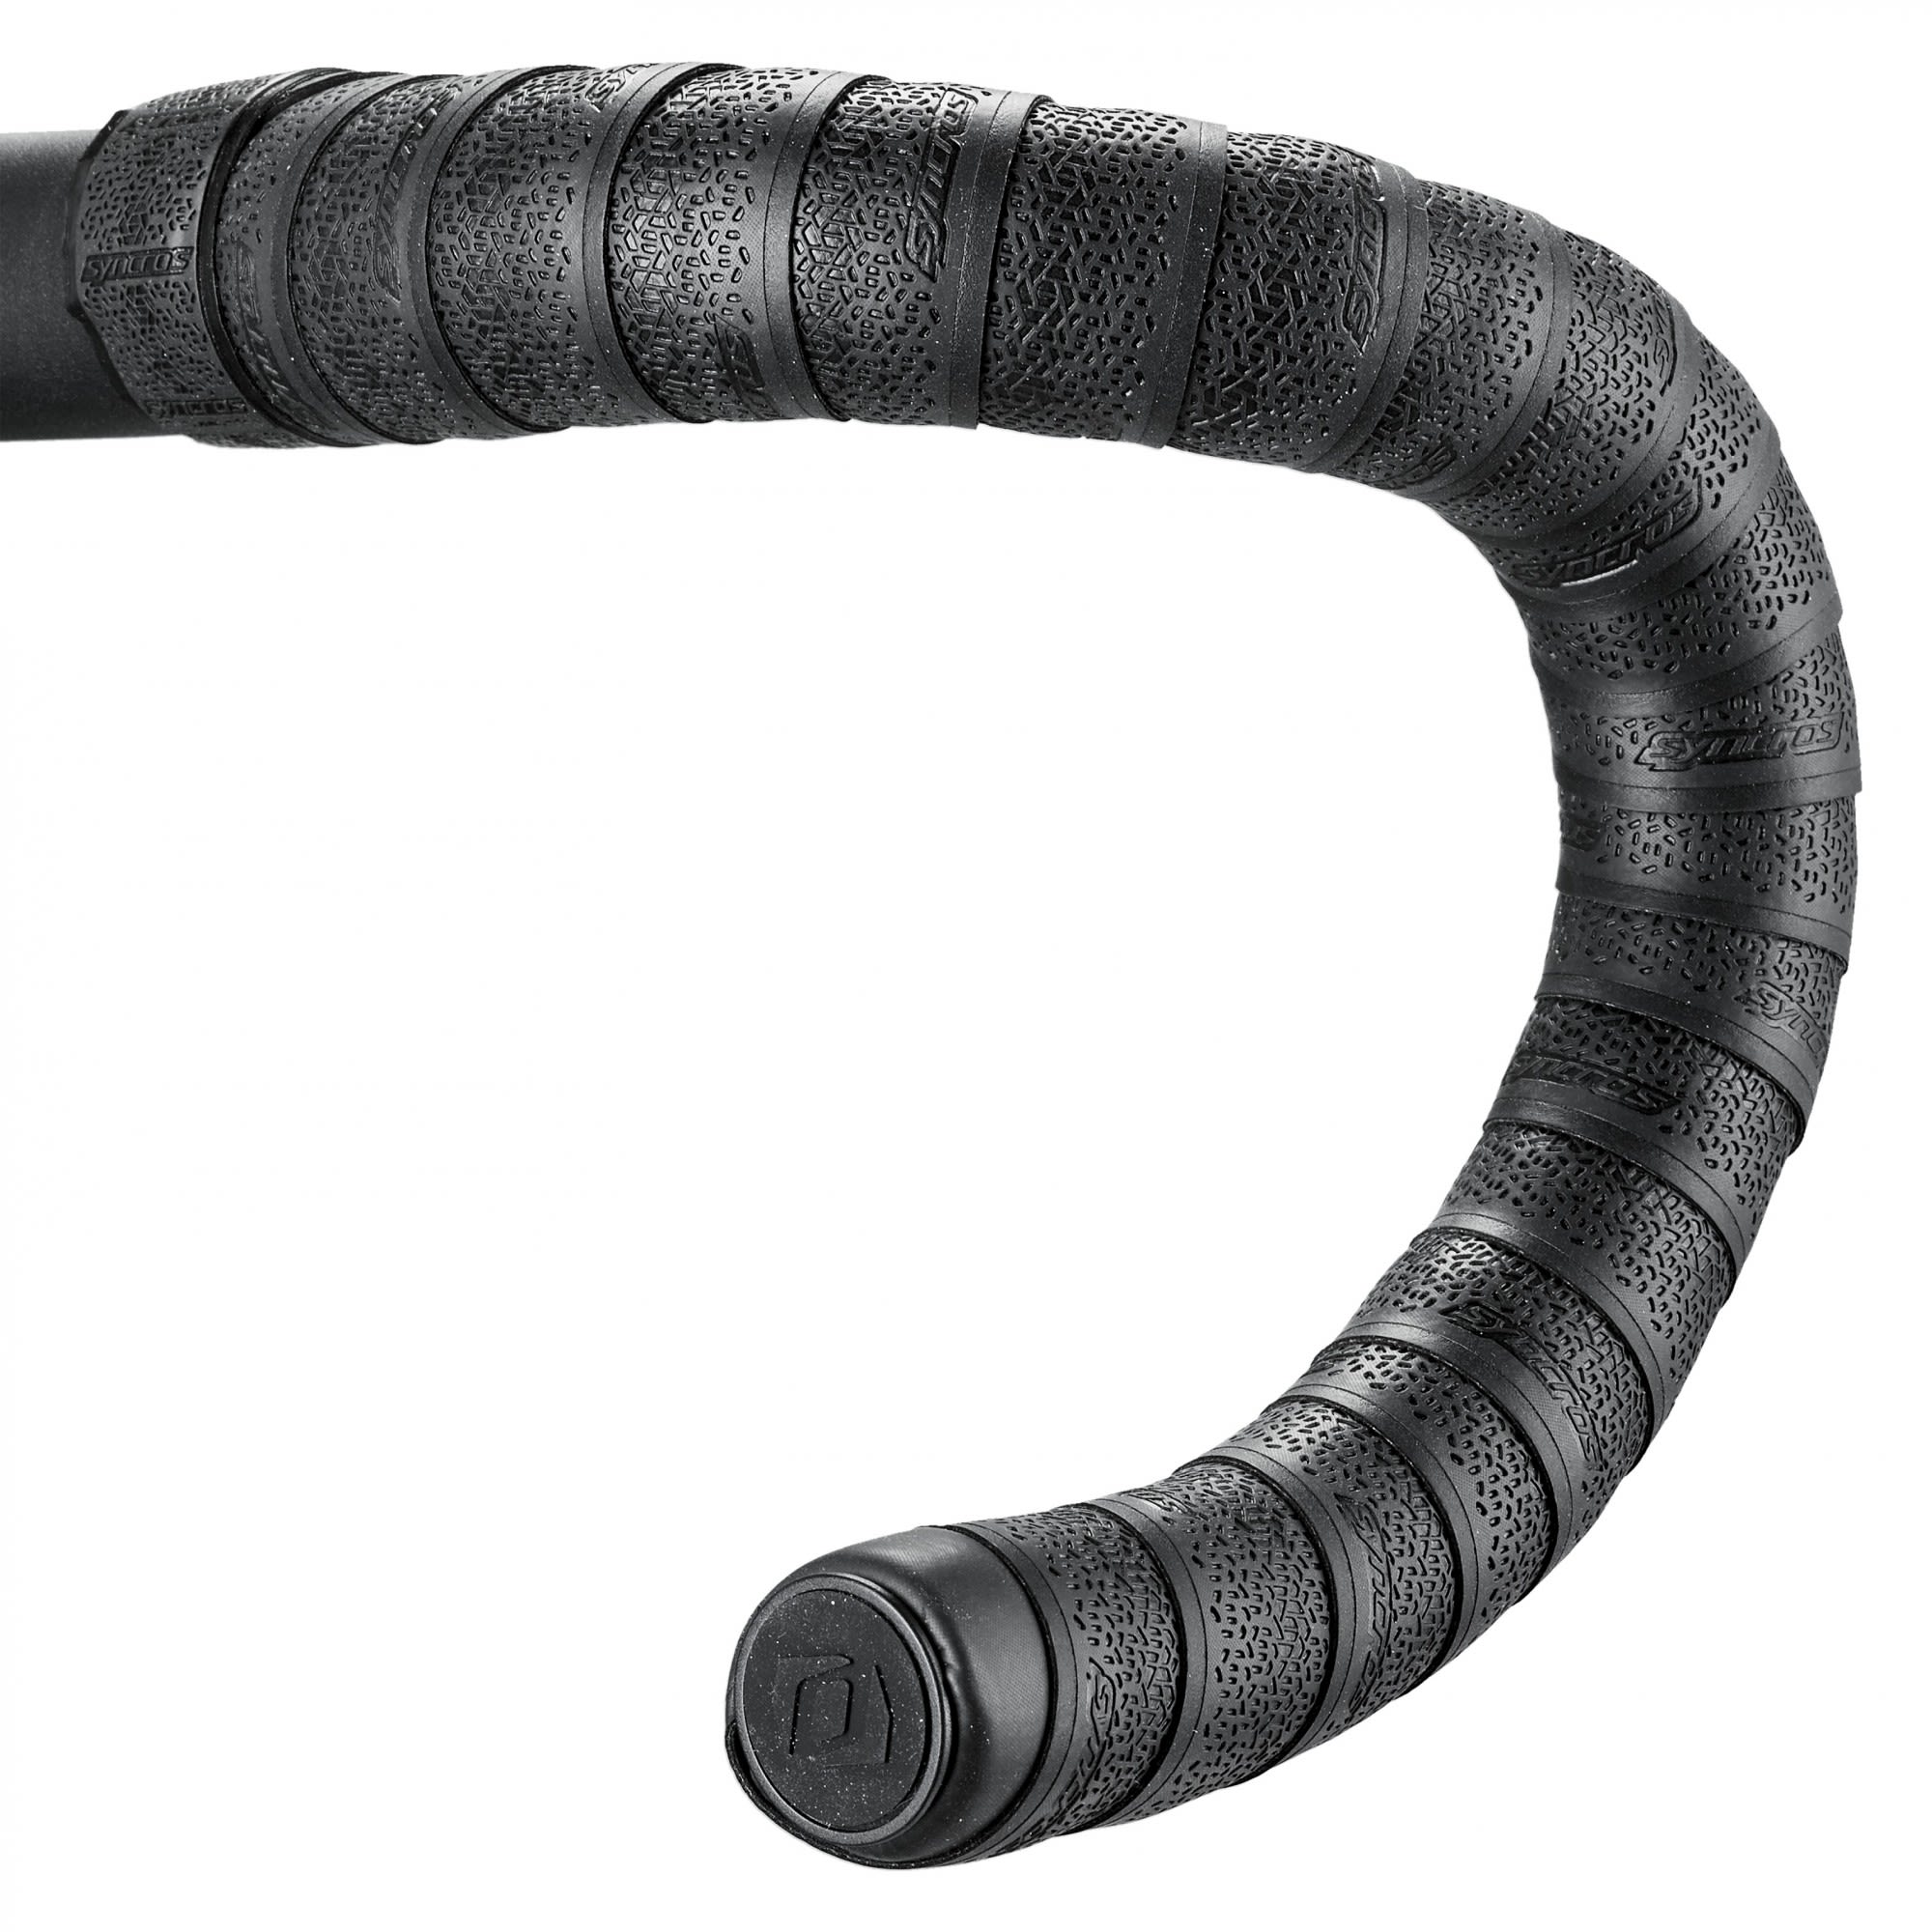 Syncros Extrem Leichtes Lenkerband Schwarz- Zubehr- Reparatur und Wartung- Grsse One Size - Farbe Black unter Syncros